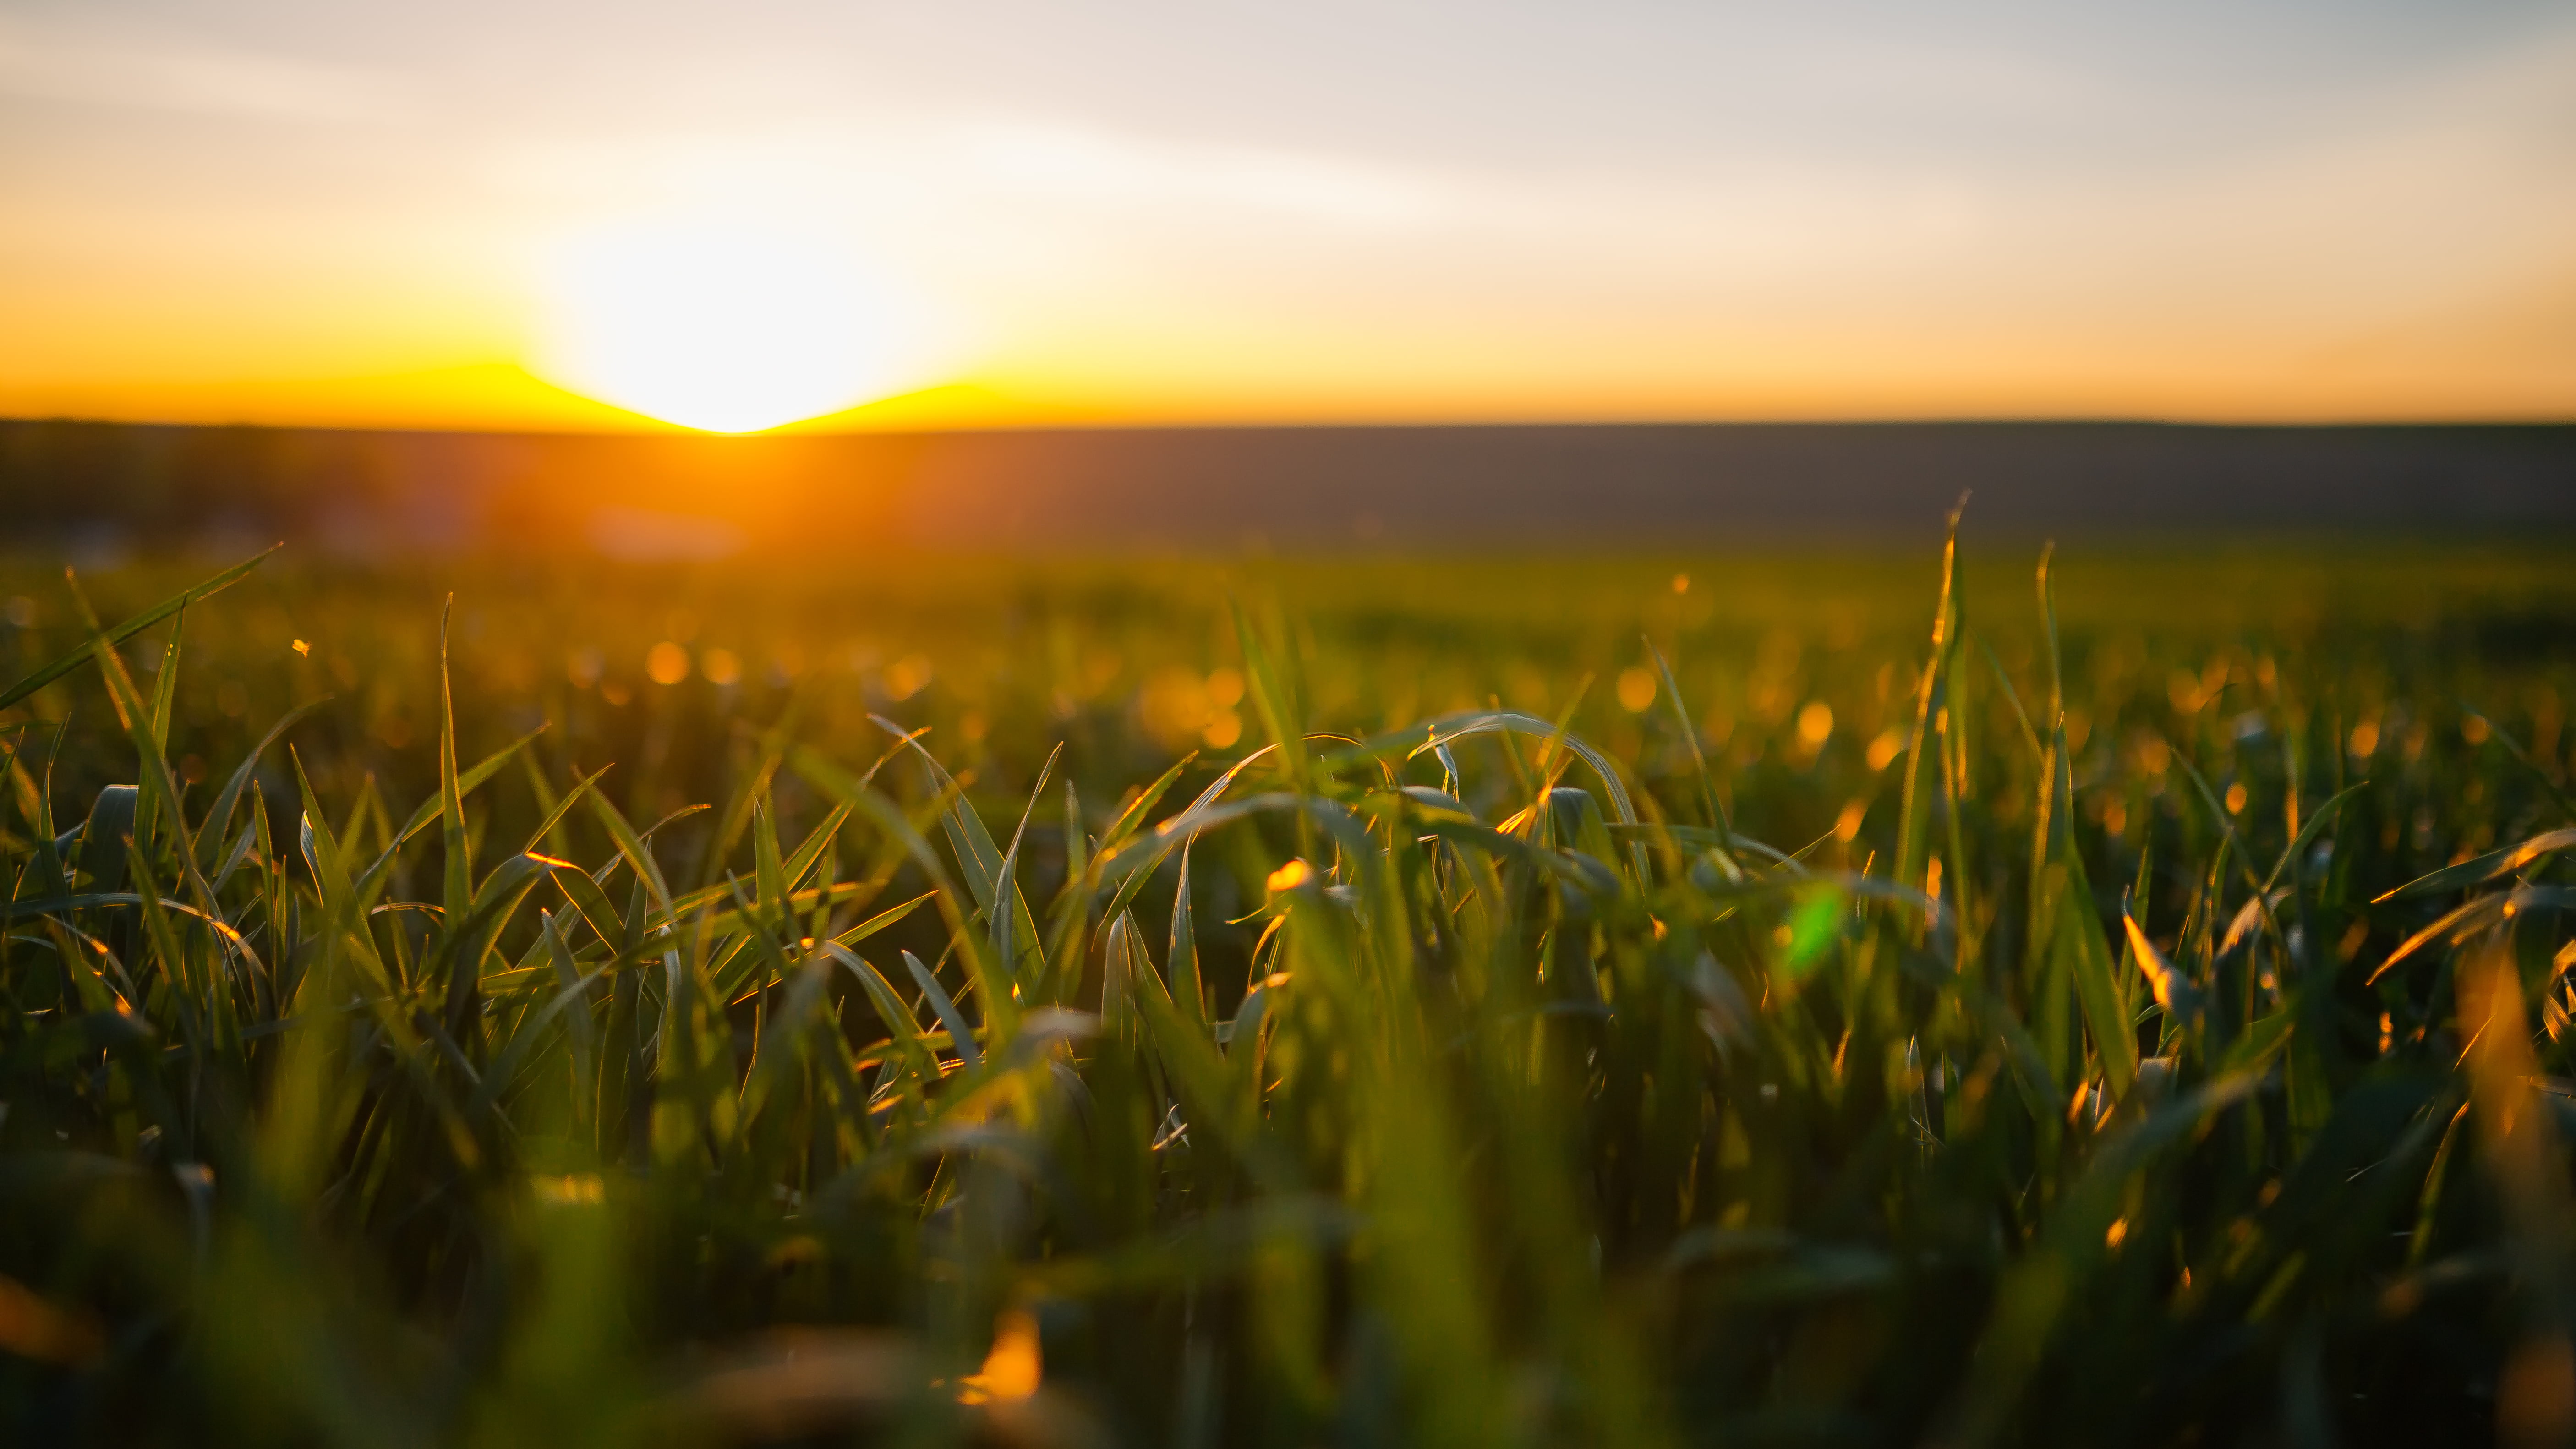 3840x2160 resolution | green grass field during day light HD wallpaper ...